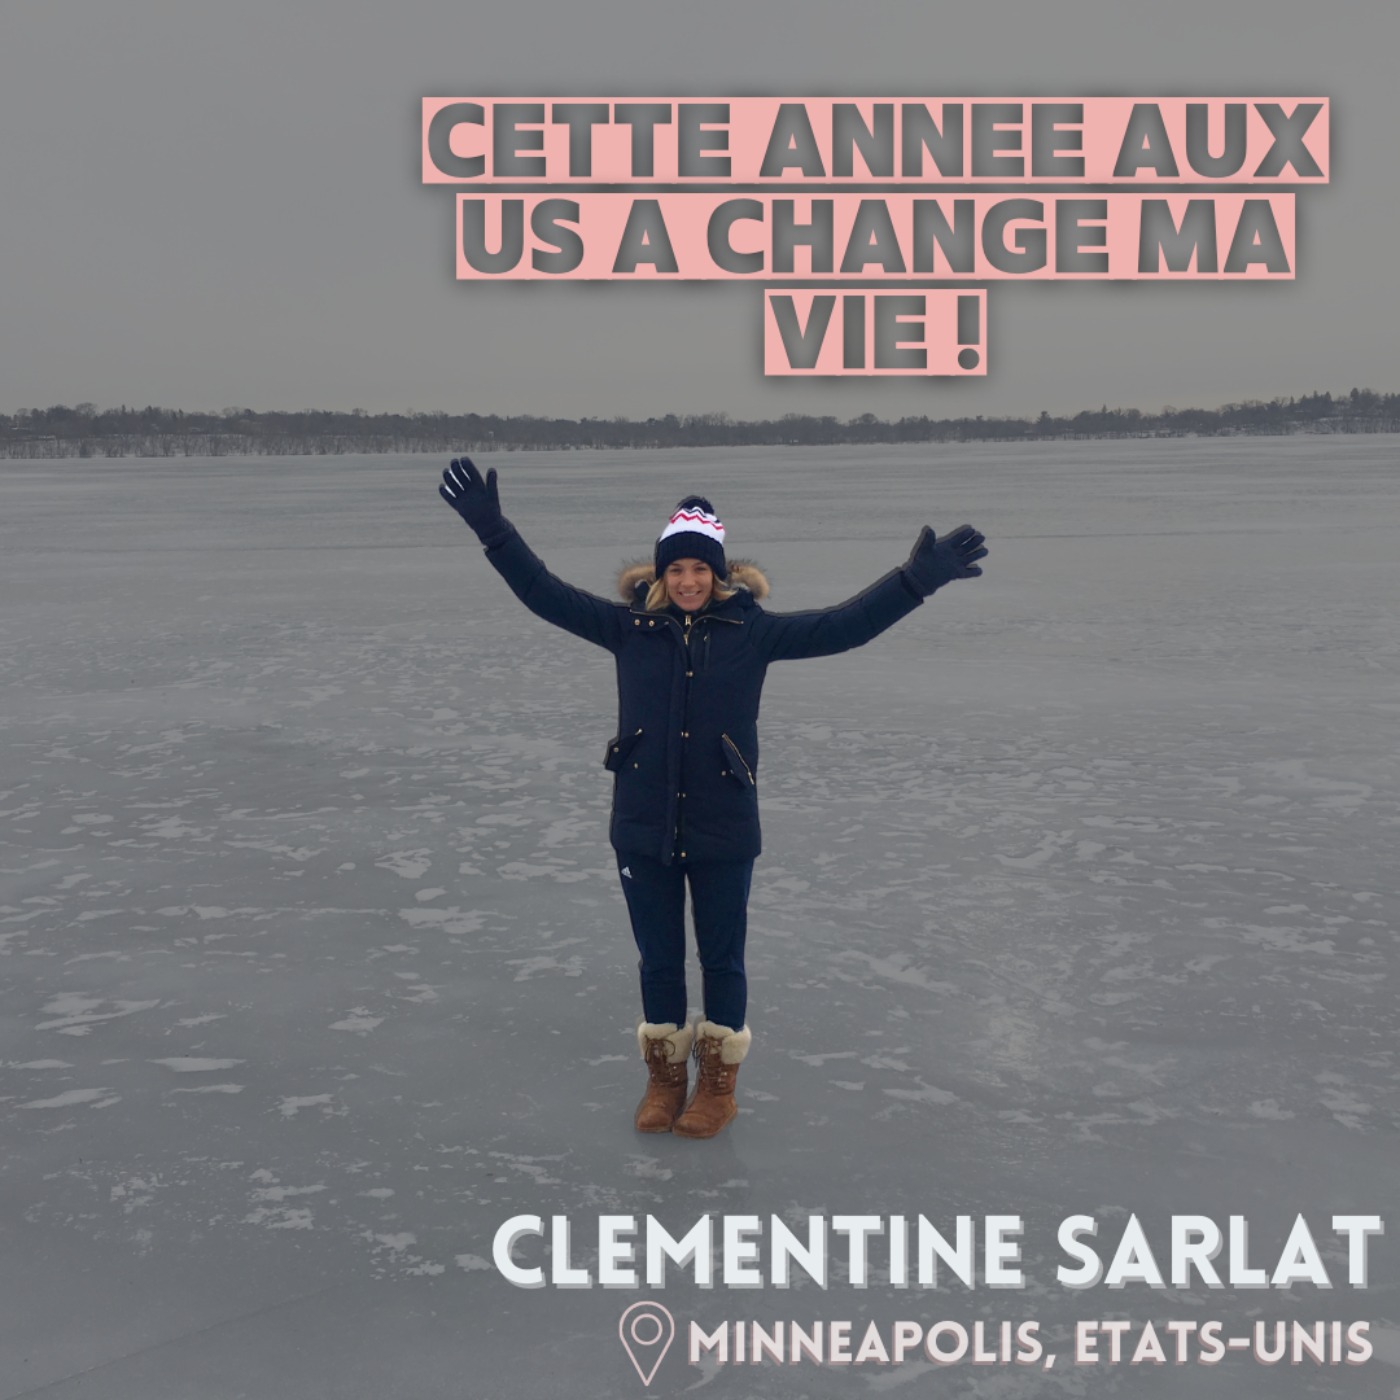 Clémentine Sarlat : Cette année aux US a changé ma vie